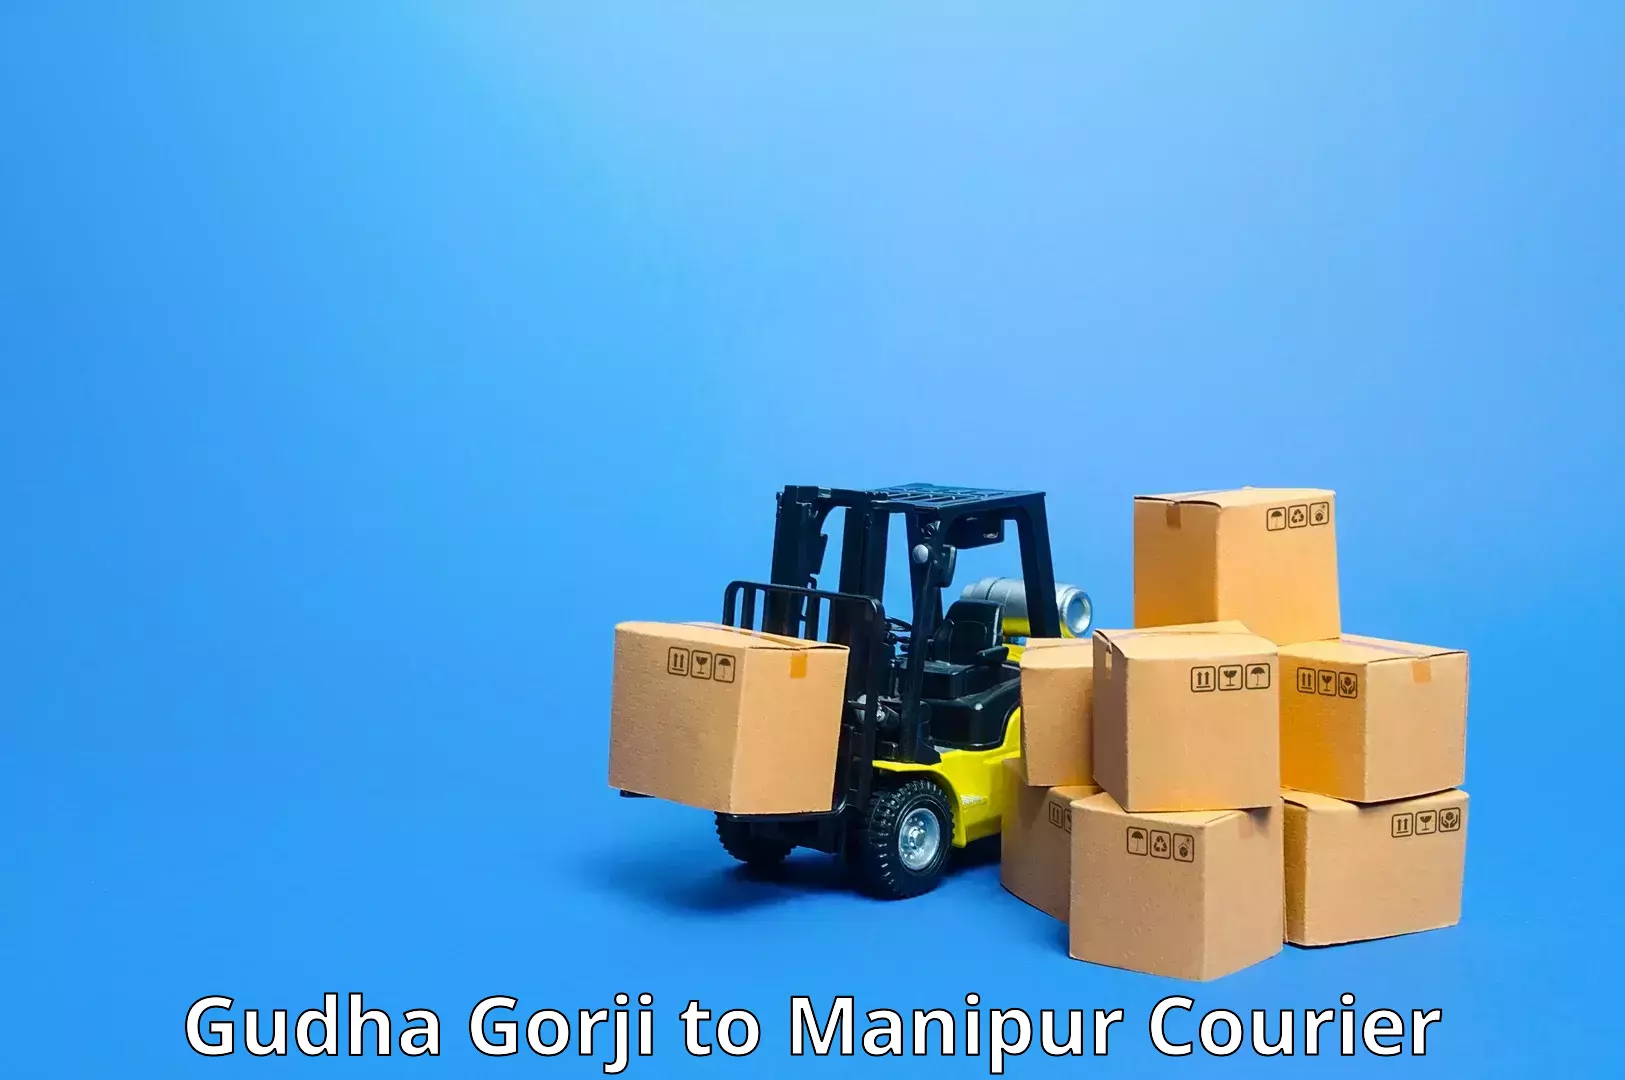 Tech-enabled shipping in Gudha Gorji to Ukhrul